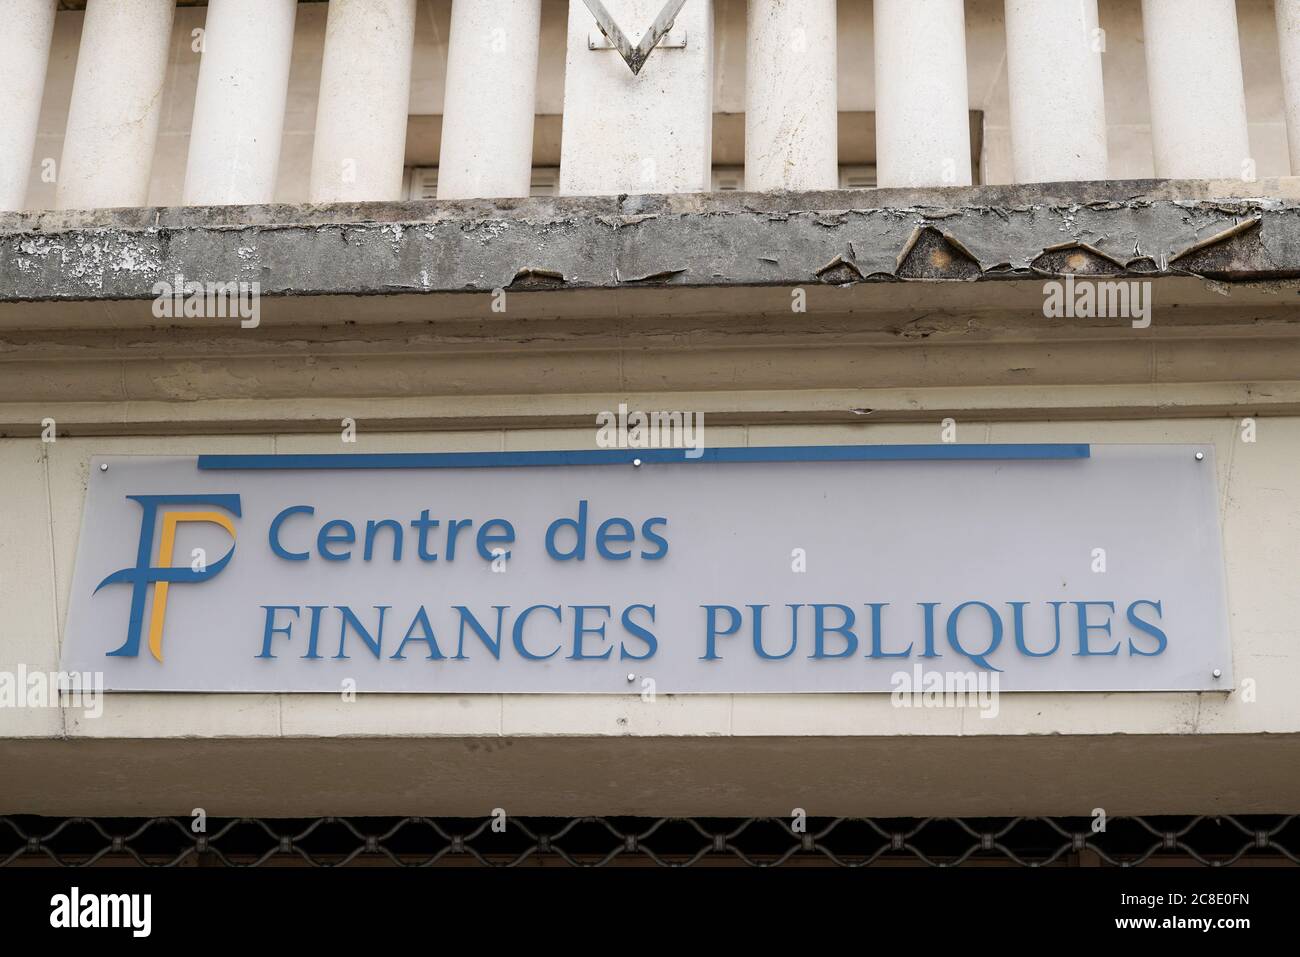 Bordeaux , Aquitaine / France - 07 21 2020 : centre des finances publiques is French public finances logo sign on taxes office building Stock Photo